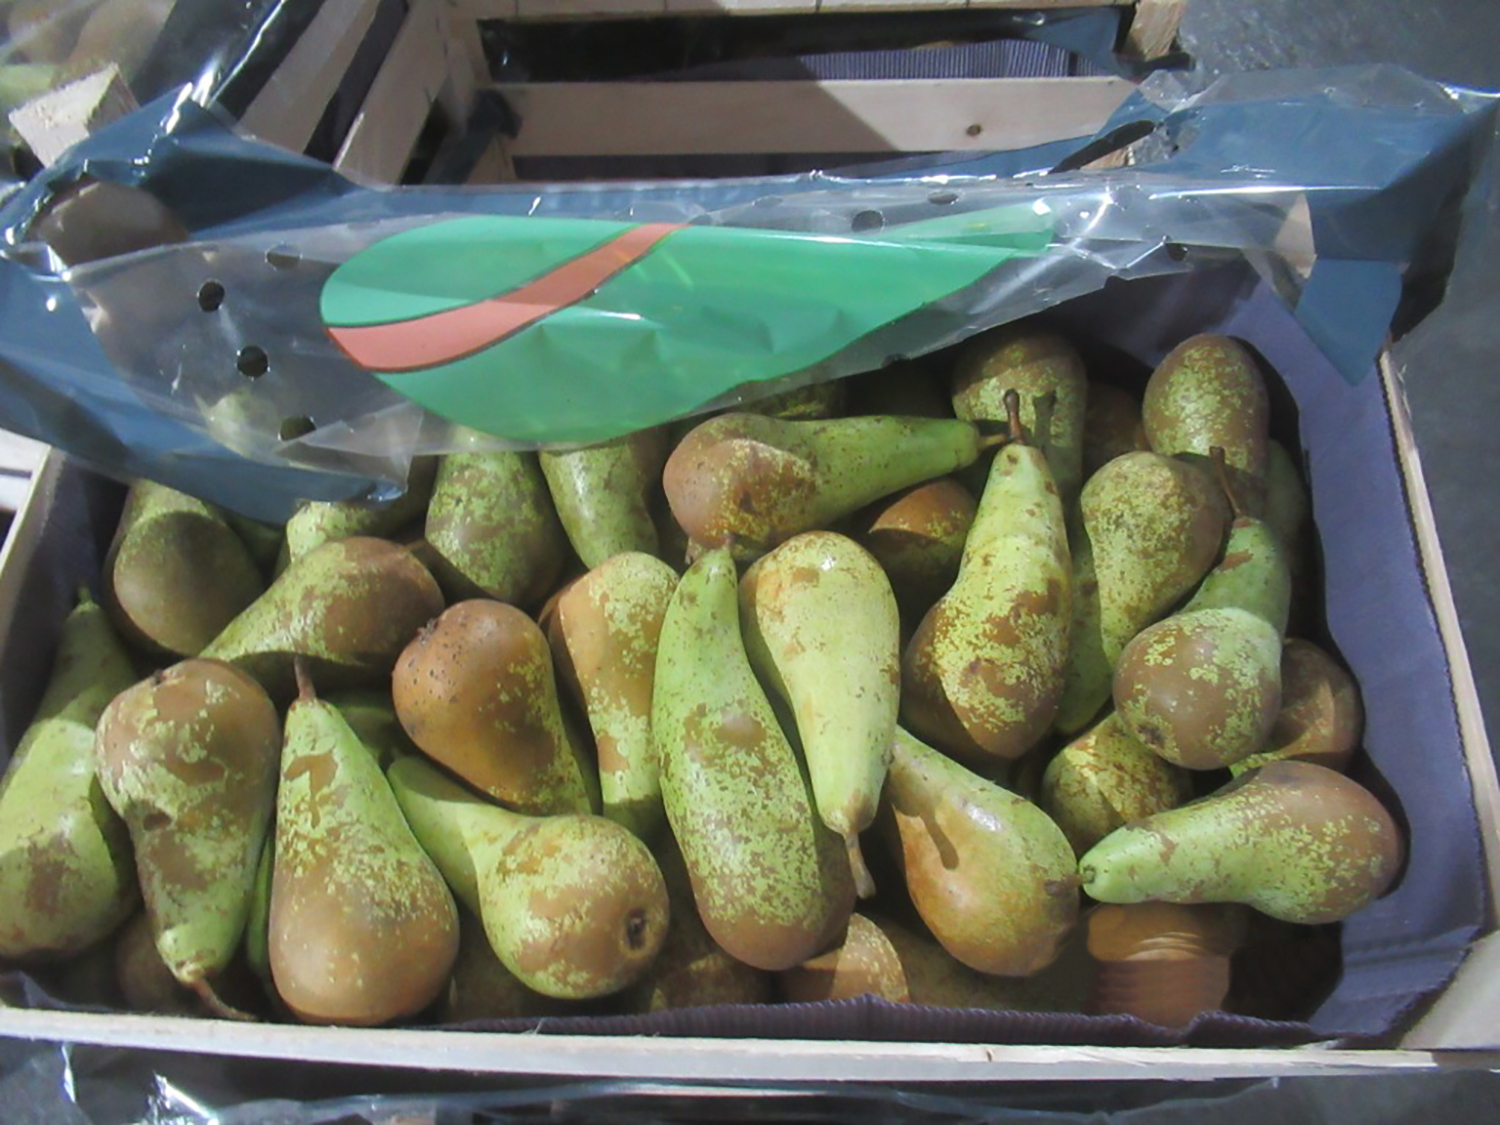 Брянские таможенники пресекли попытку контрабандного ввоза в Россию свыше 44 тонн груш